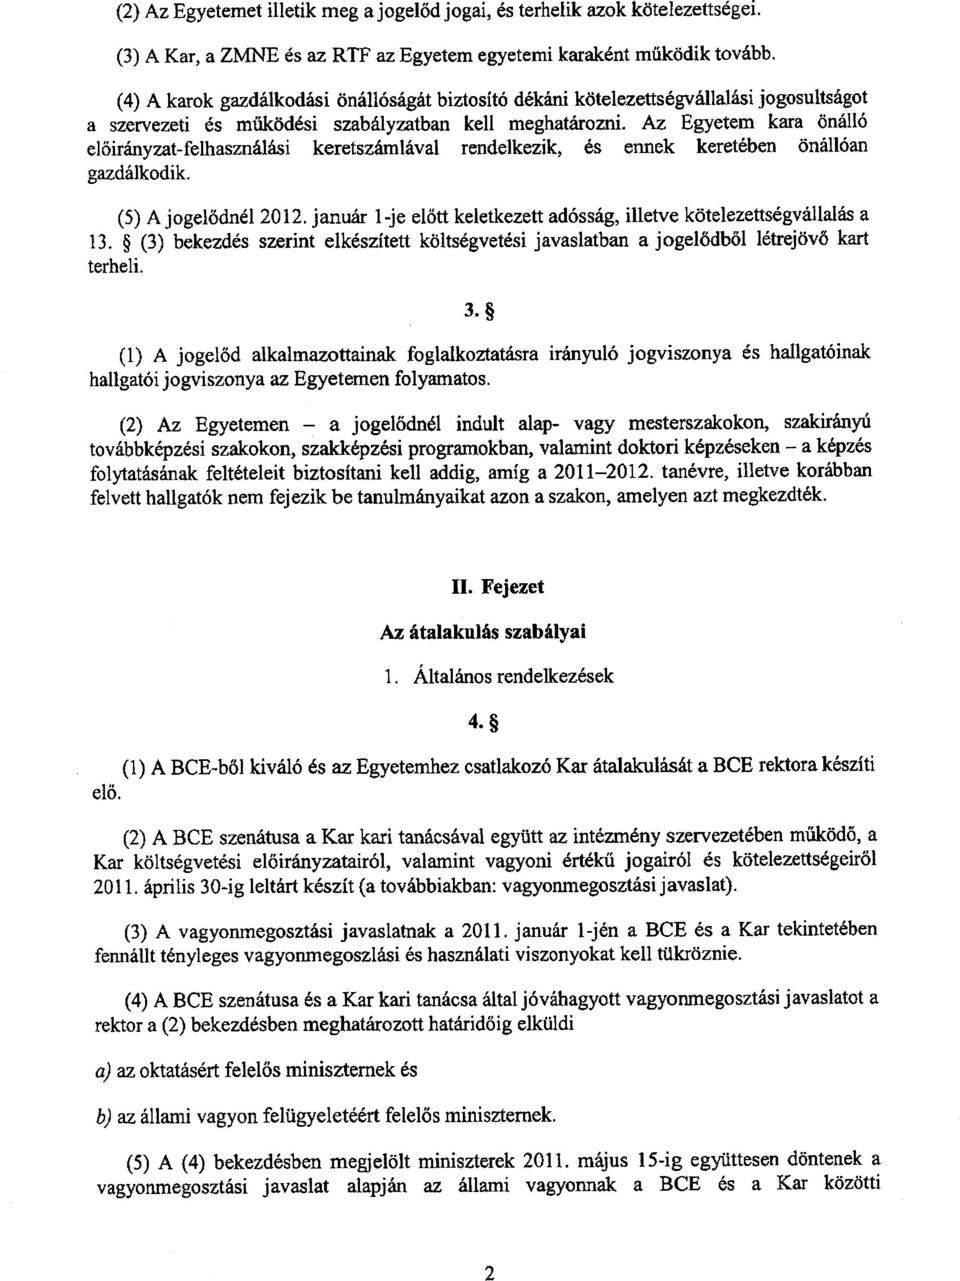 Az Egyetem kara önálló el őirányzat-felhasználási keretszámlával rendelkezik, és ennek keretében önállóa n gazdálkodik. (5) A jogel ődnél 2012.